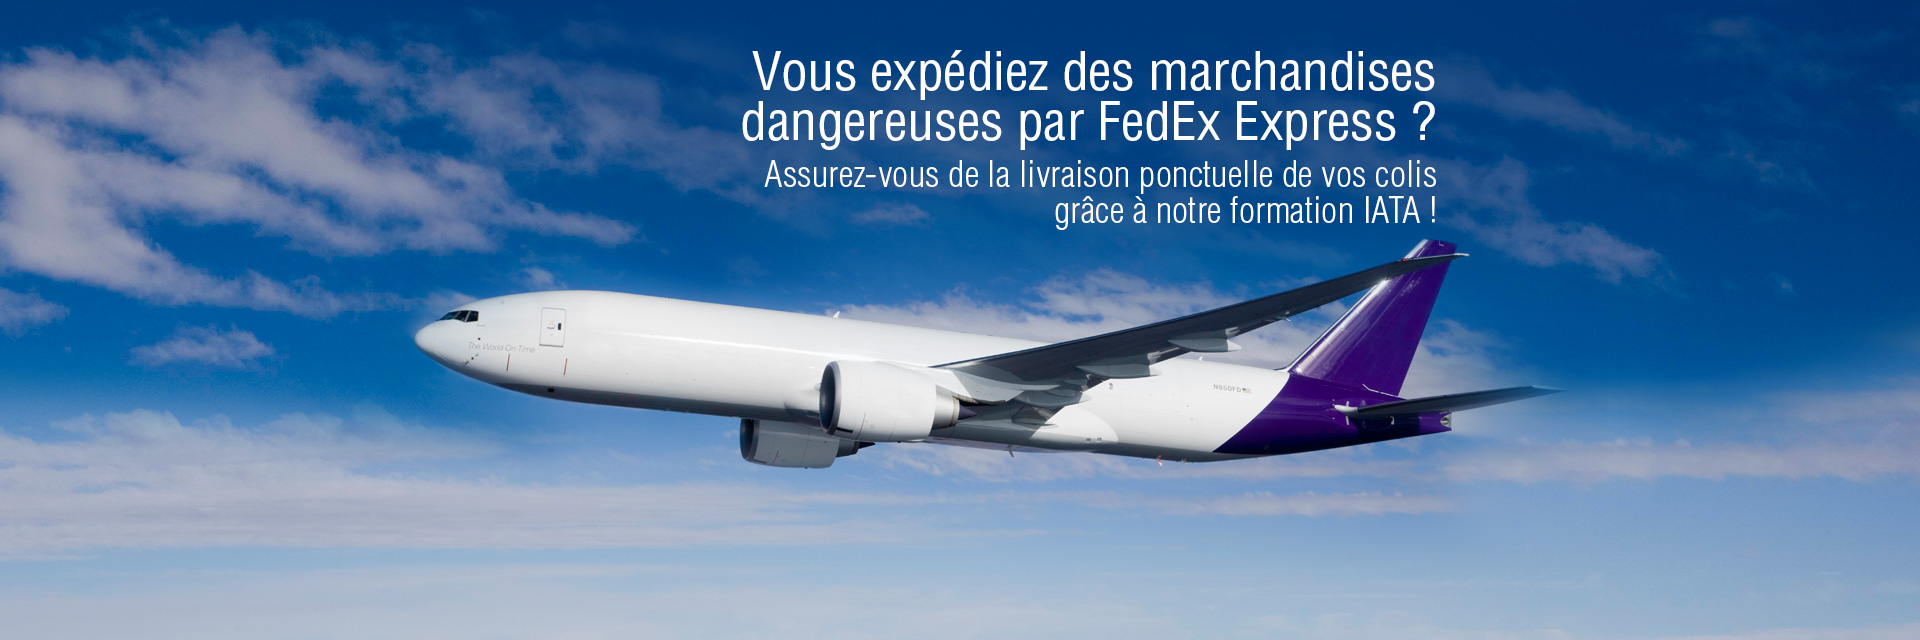 Formation TMD - Expédition Marchandises Dangereuses FedEx